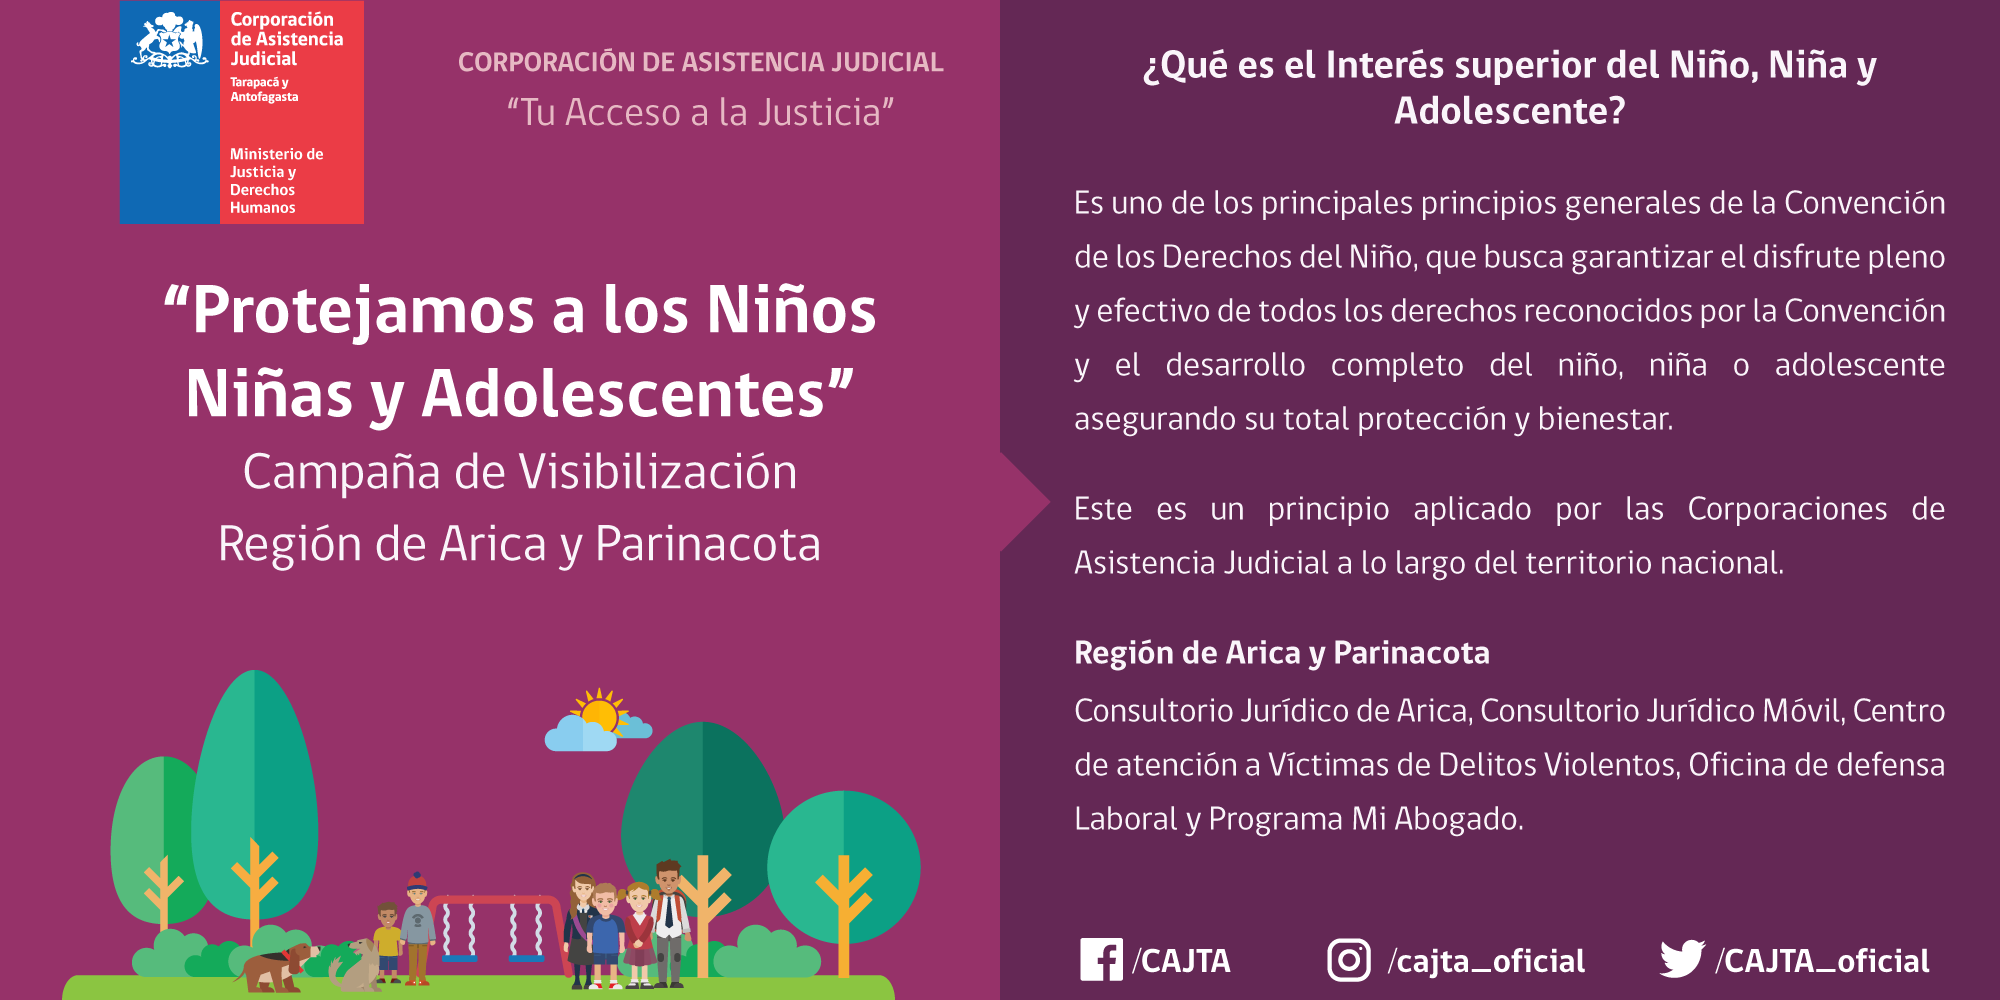 Campaña de Visibilización: Región de Arica y Parinacota